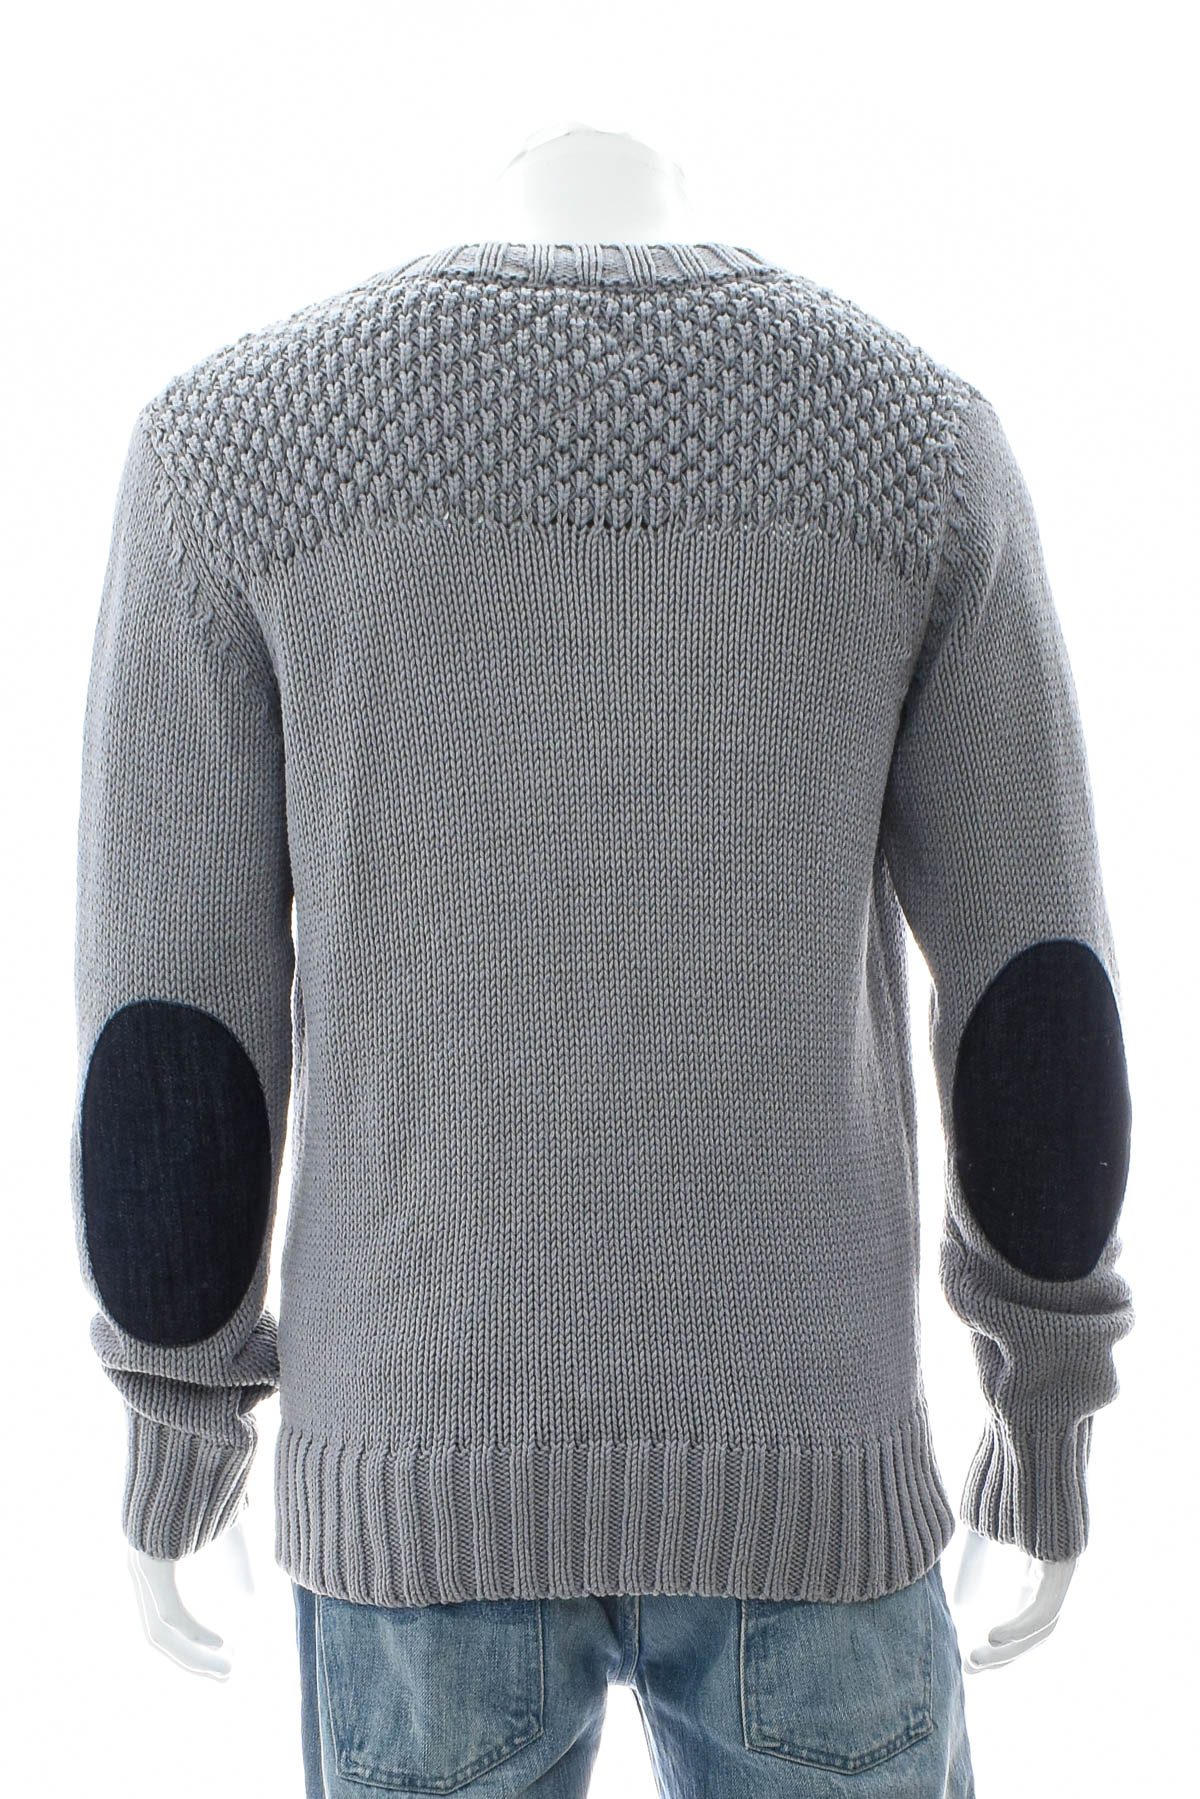 Men's sweater - Burlington - 1